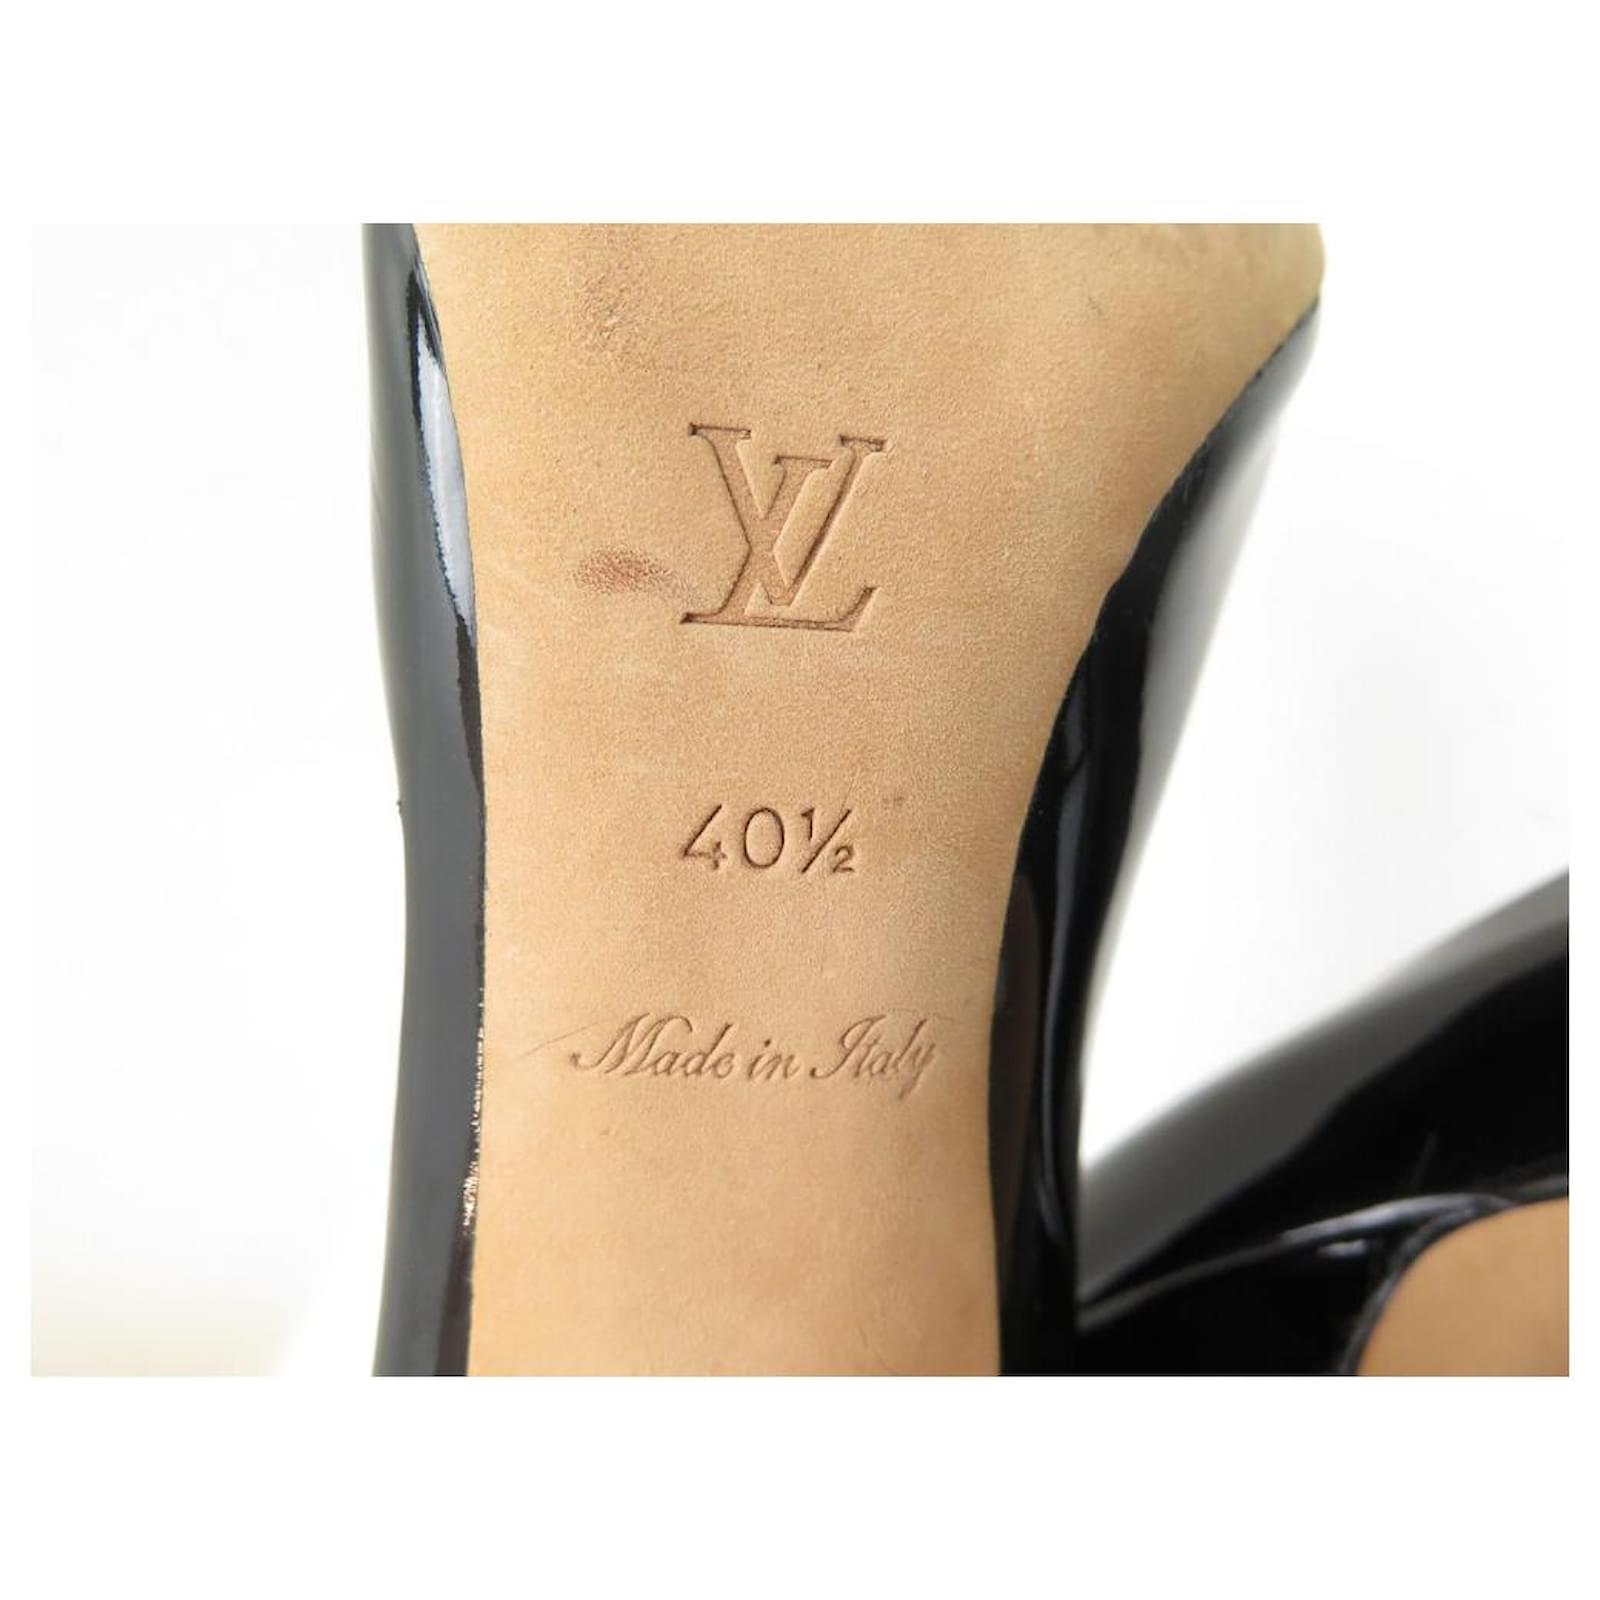 Louis Vuitton Pumps - Authentic Womens Black Patent Leather/Classy-Size  36EU/6US